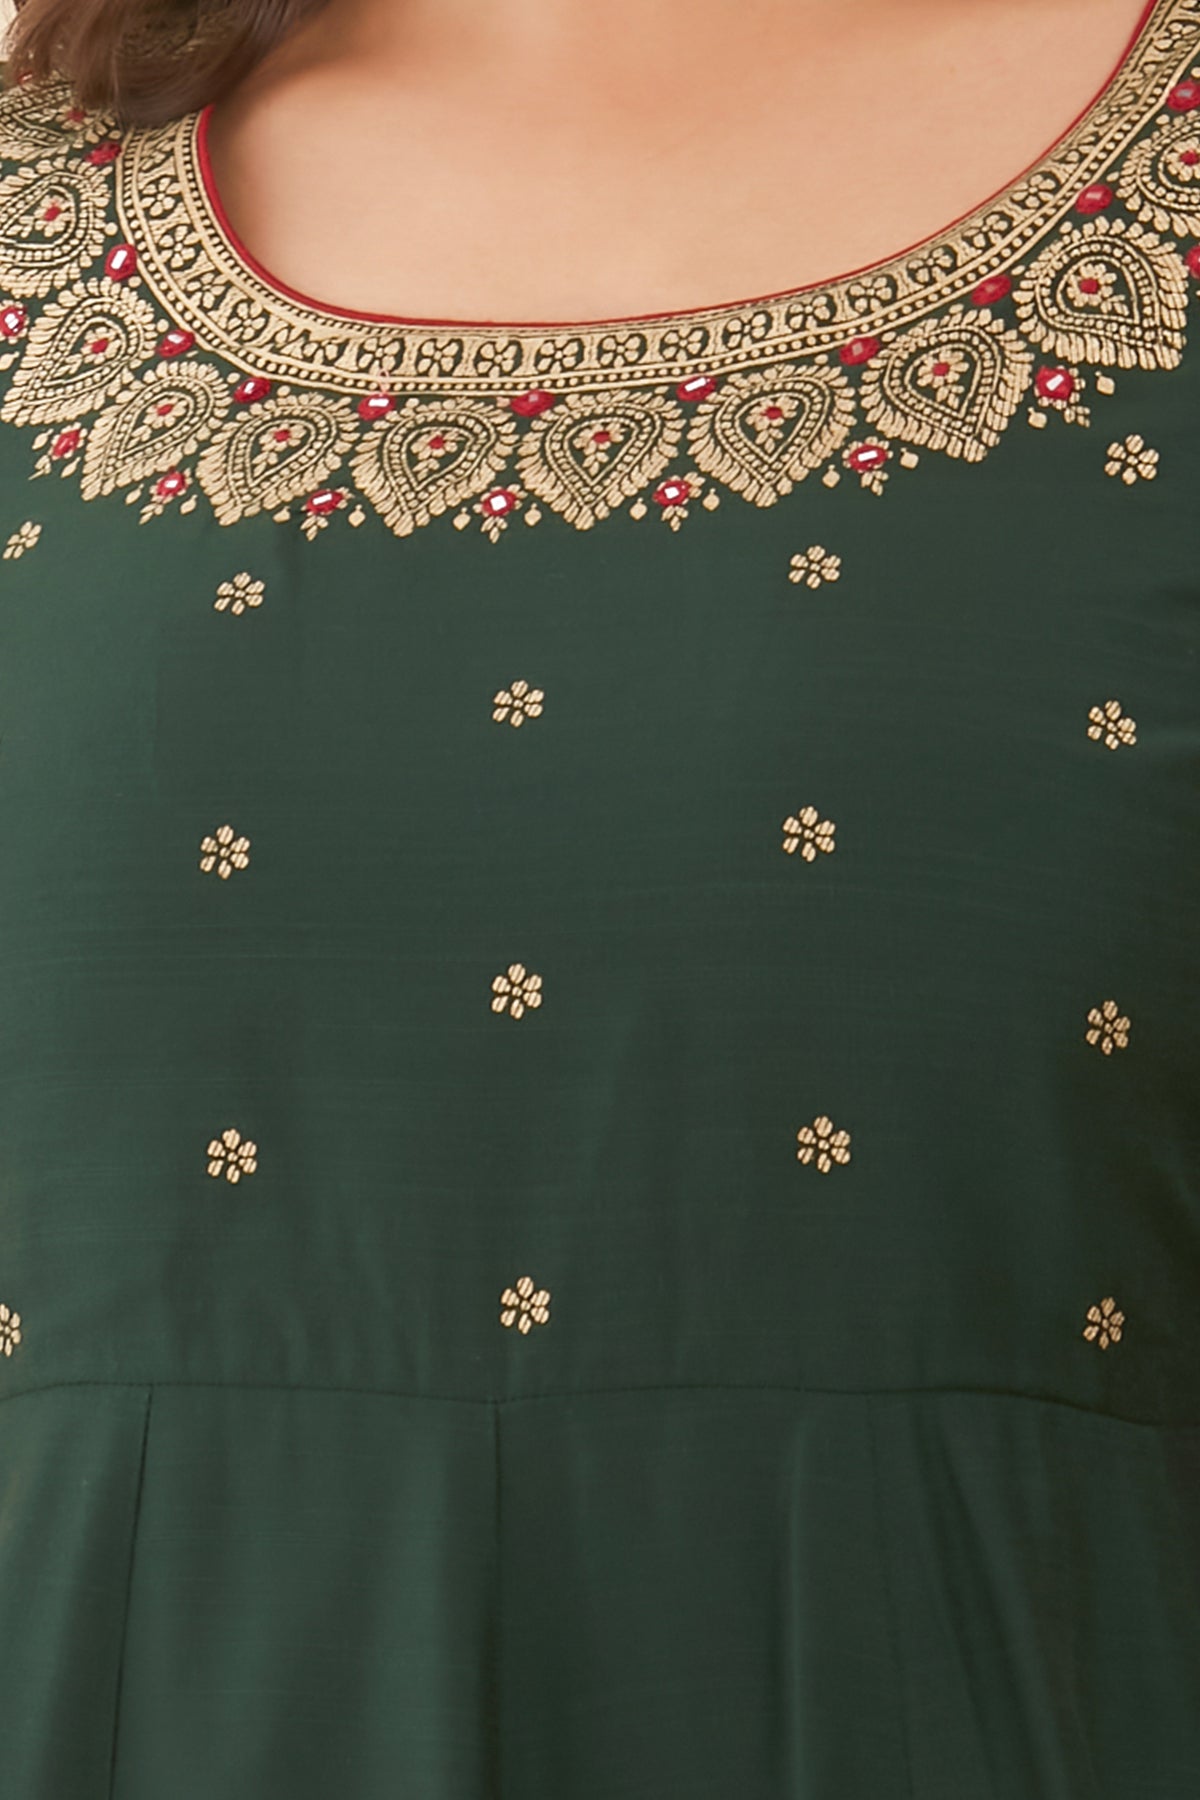 Floral & Mandala Printed With Foil Mirror Embellished Anarkali - Green